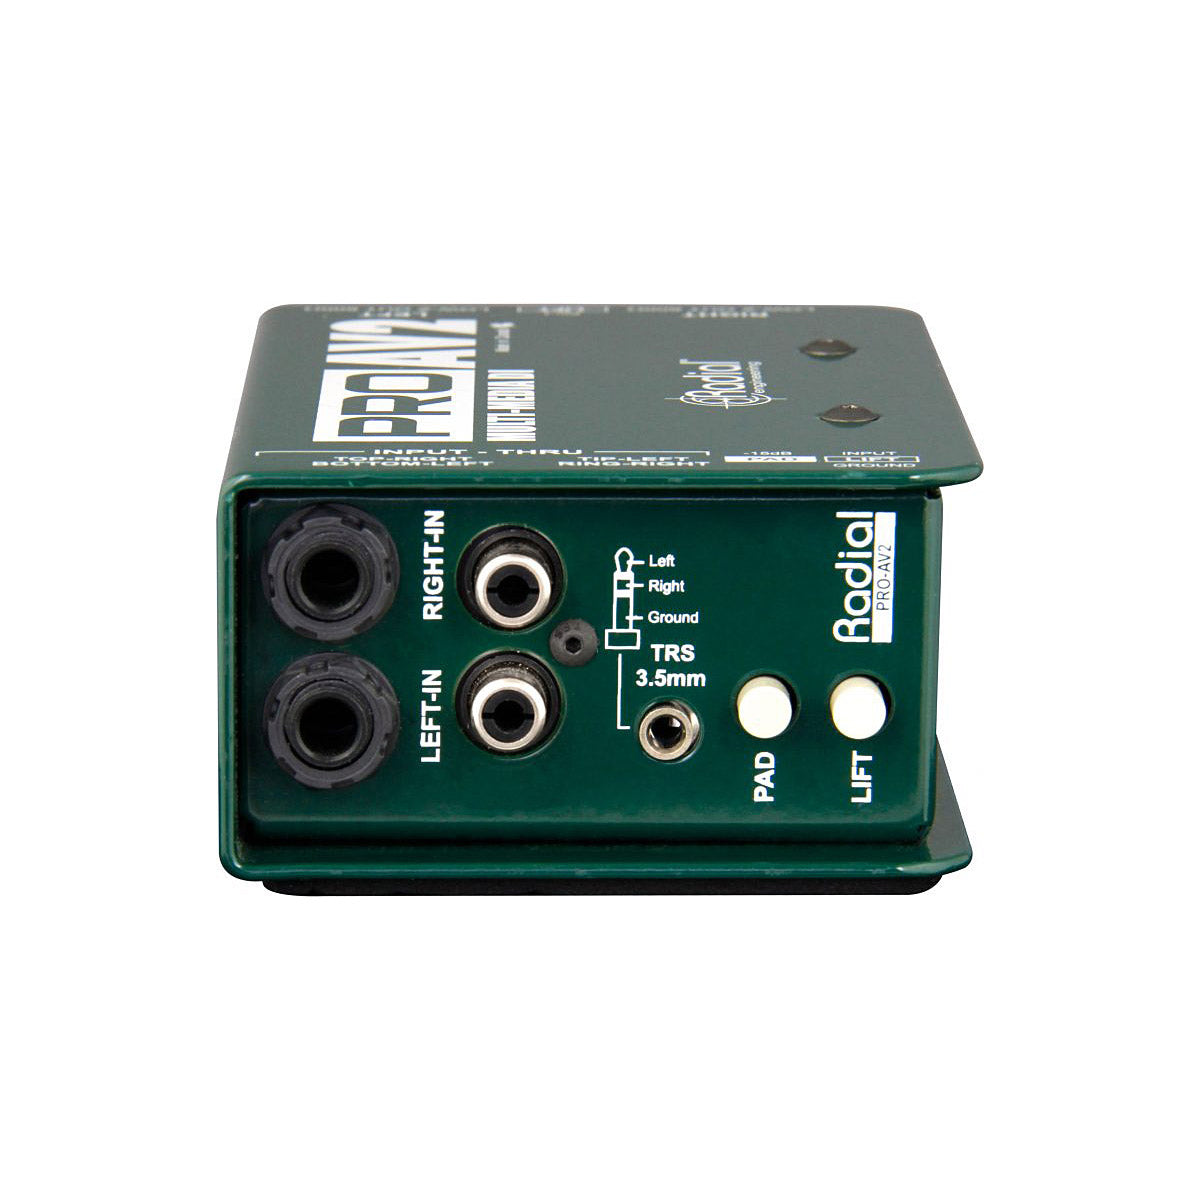 Radial ProAV2 Stereo Passive DI Box